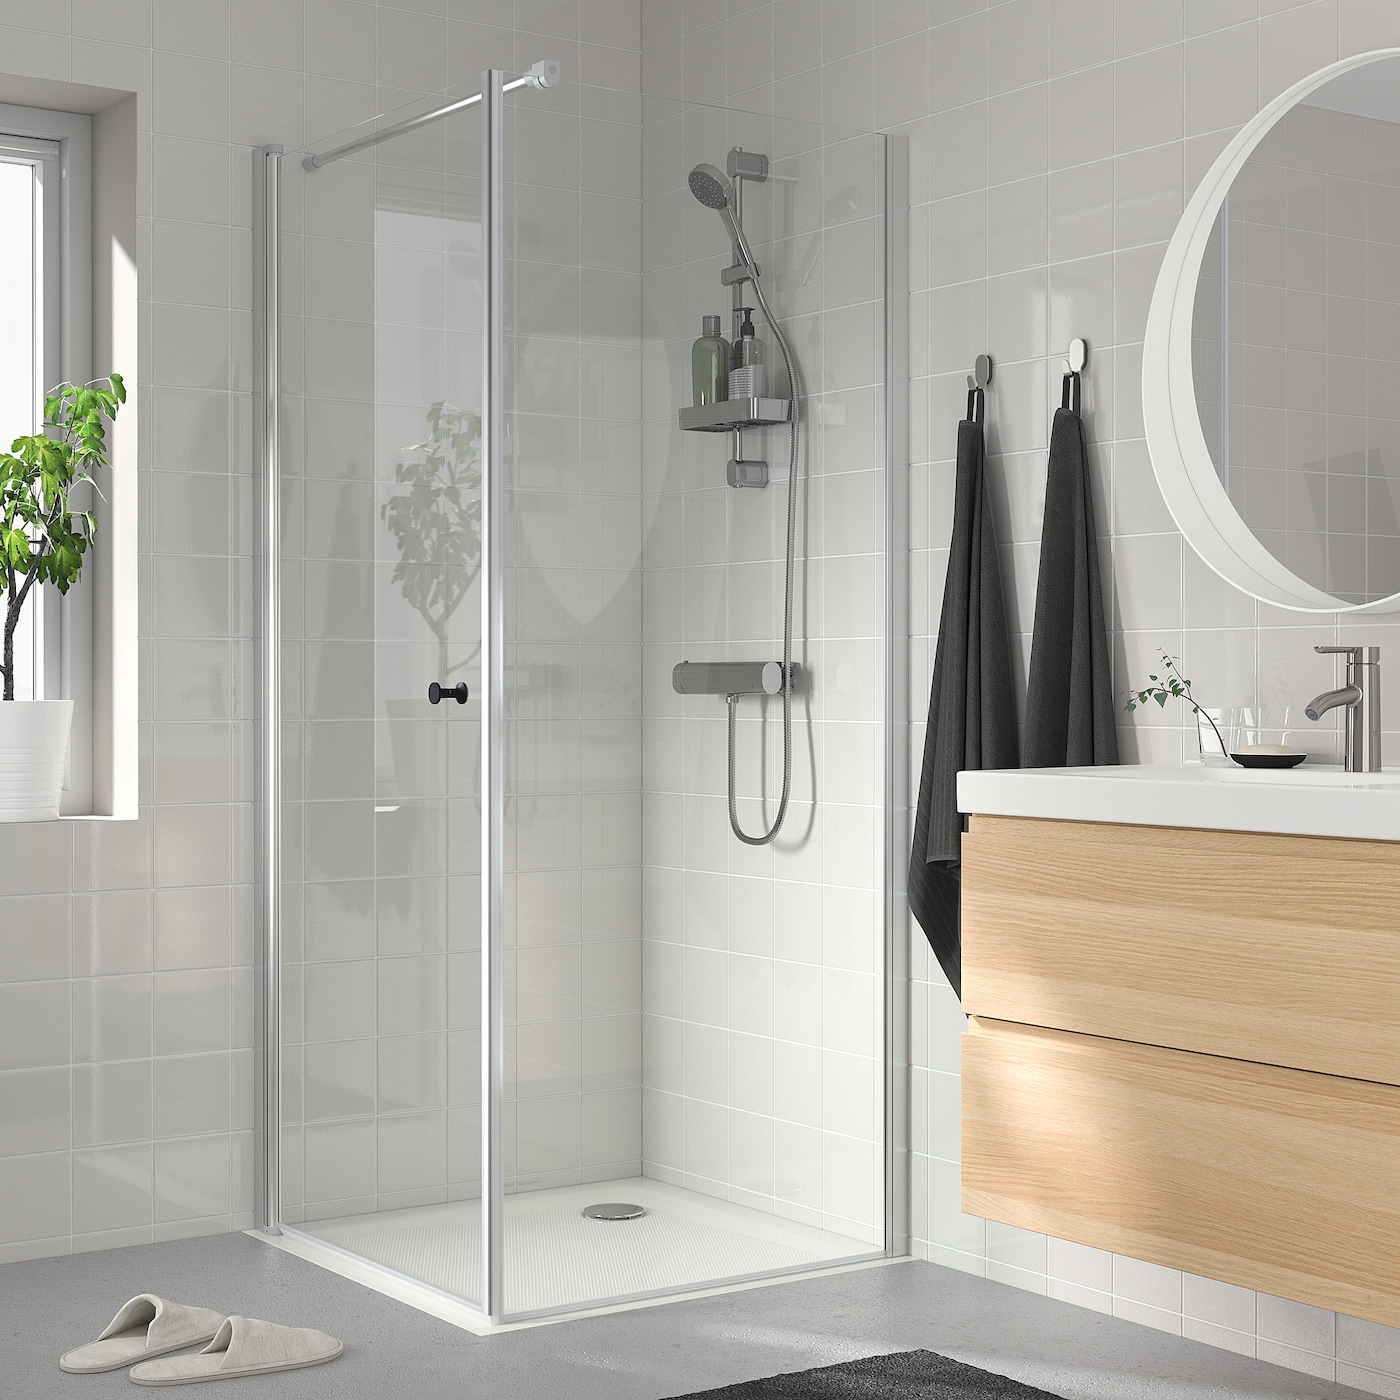 OPPEJEN / FOTINGEN corner shower with tray - IKEA